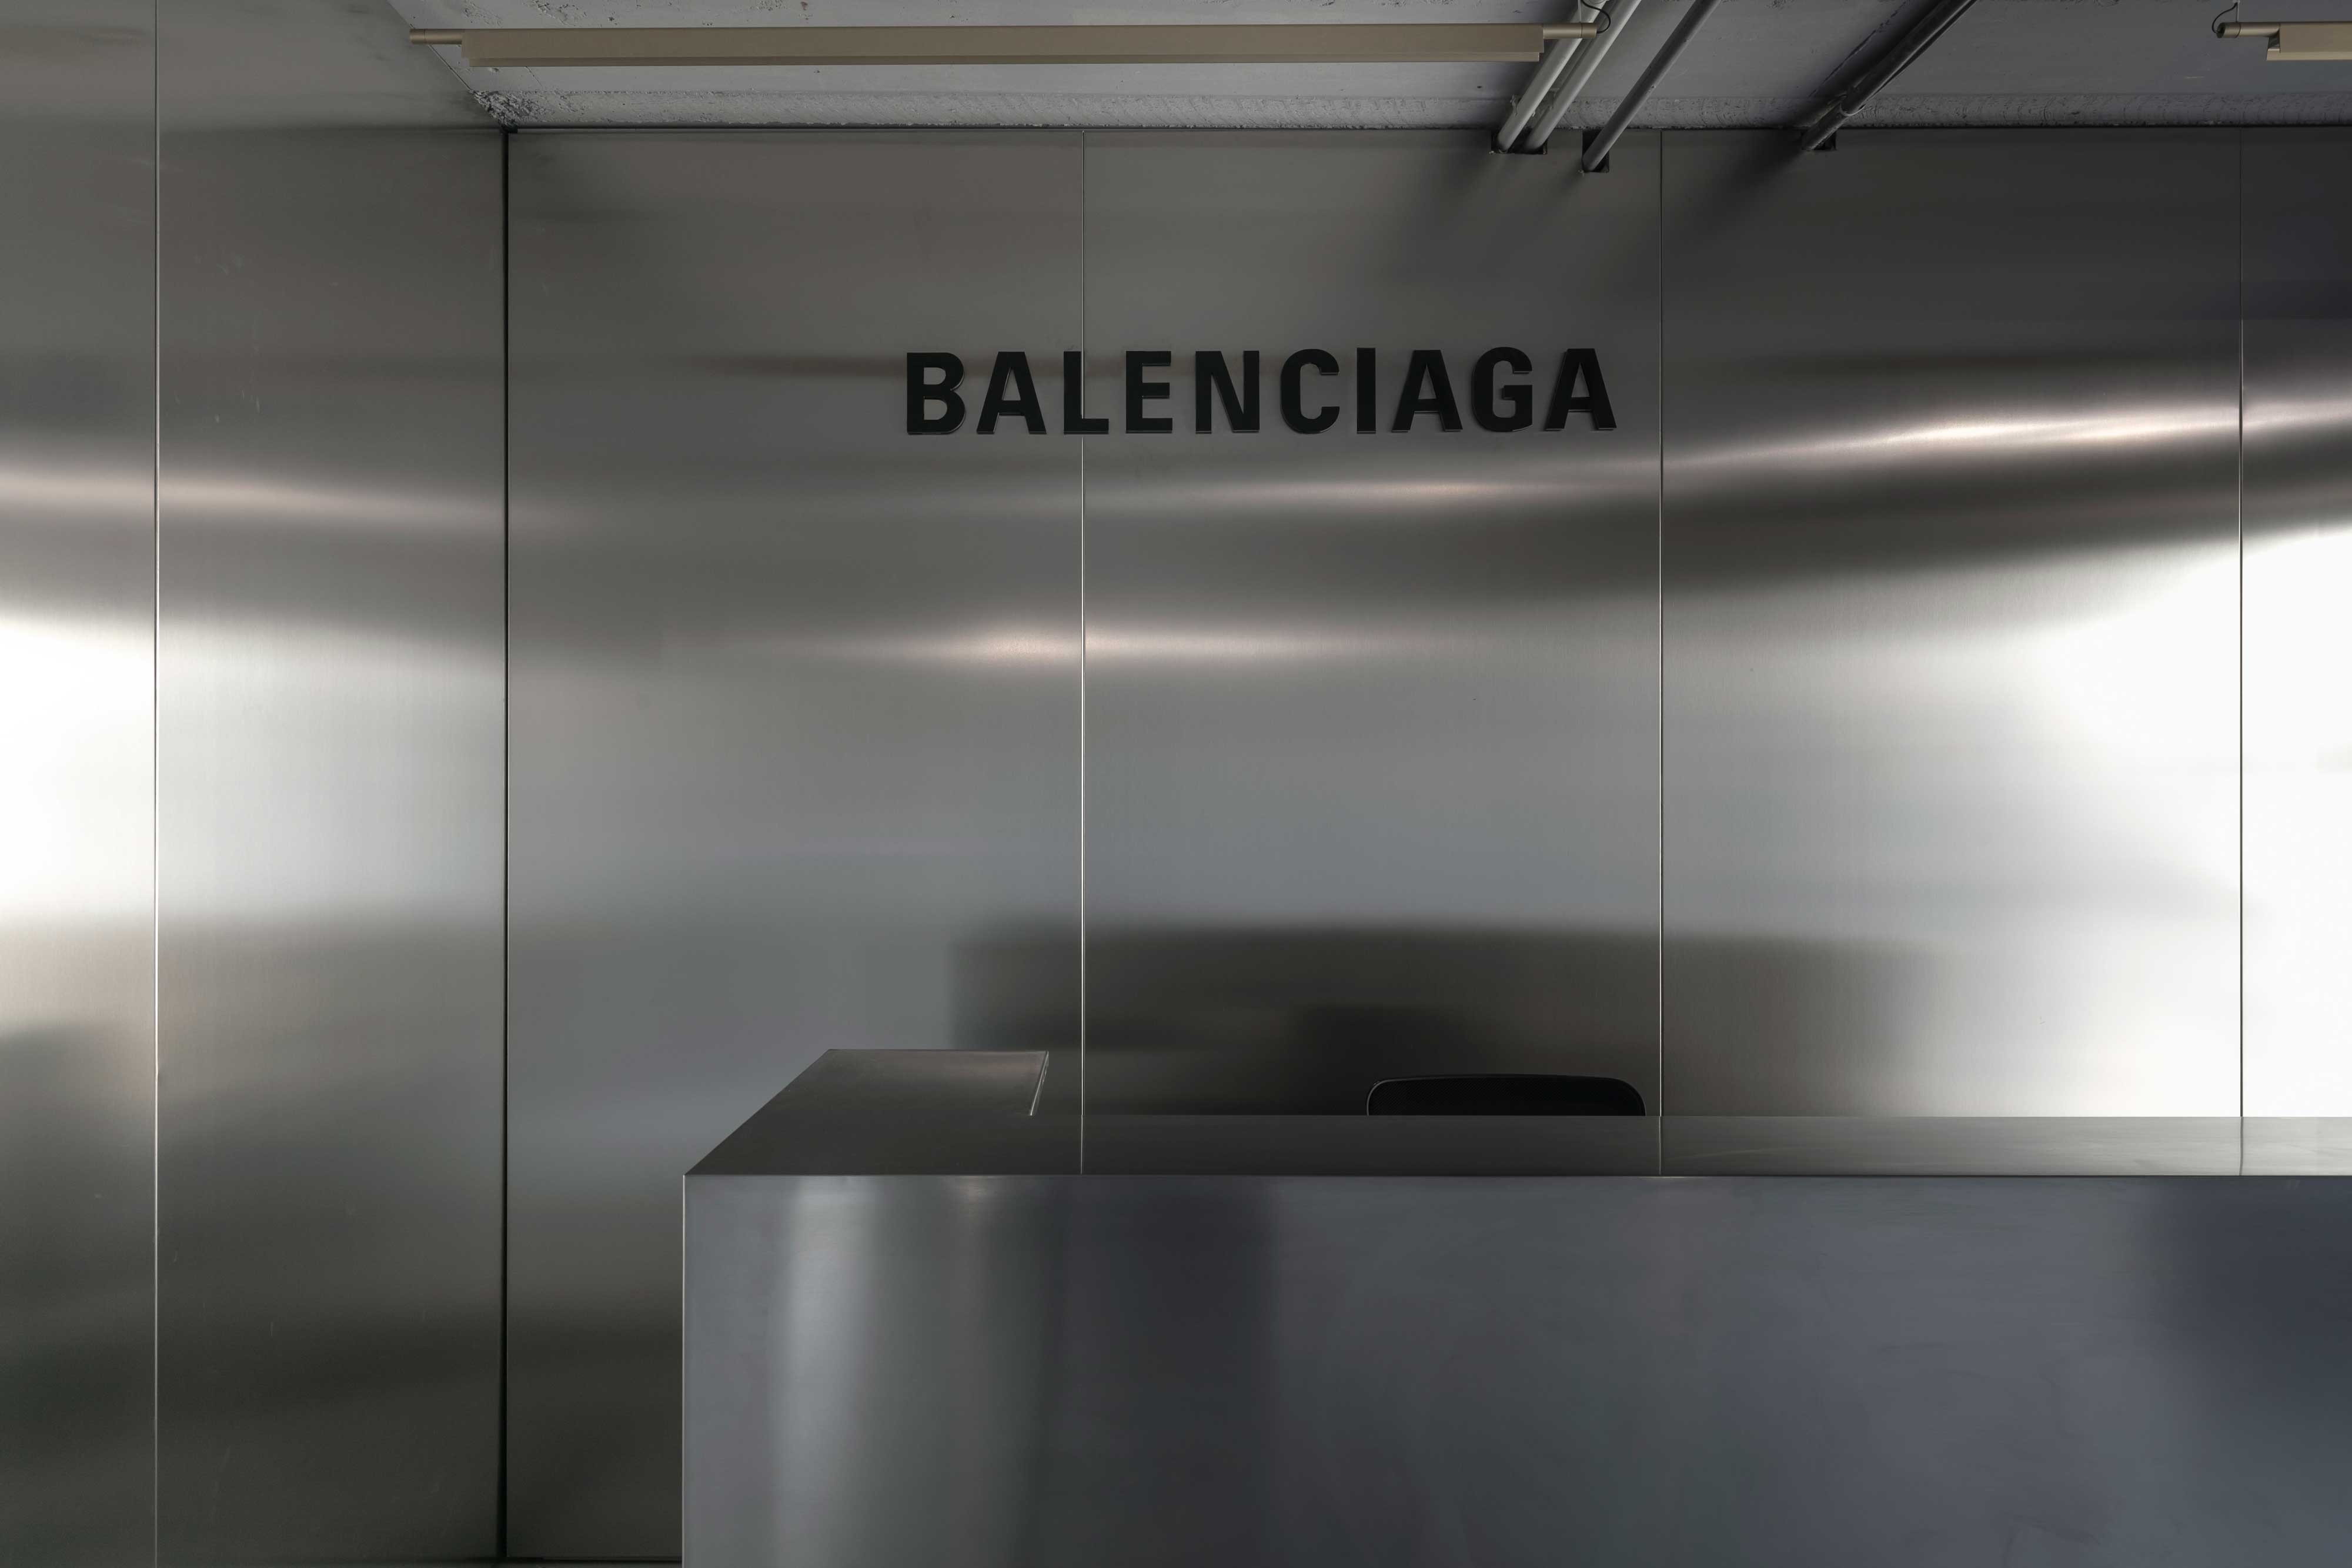 BALENCIAGA Training center